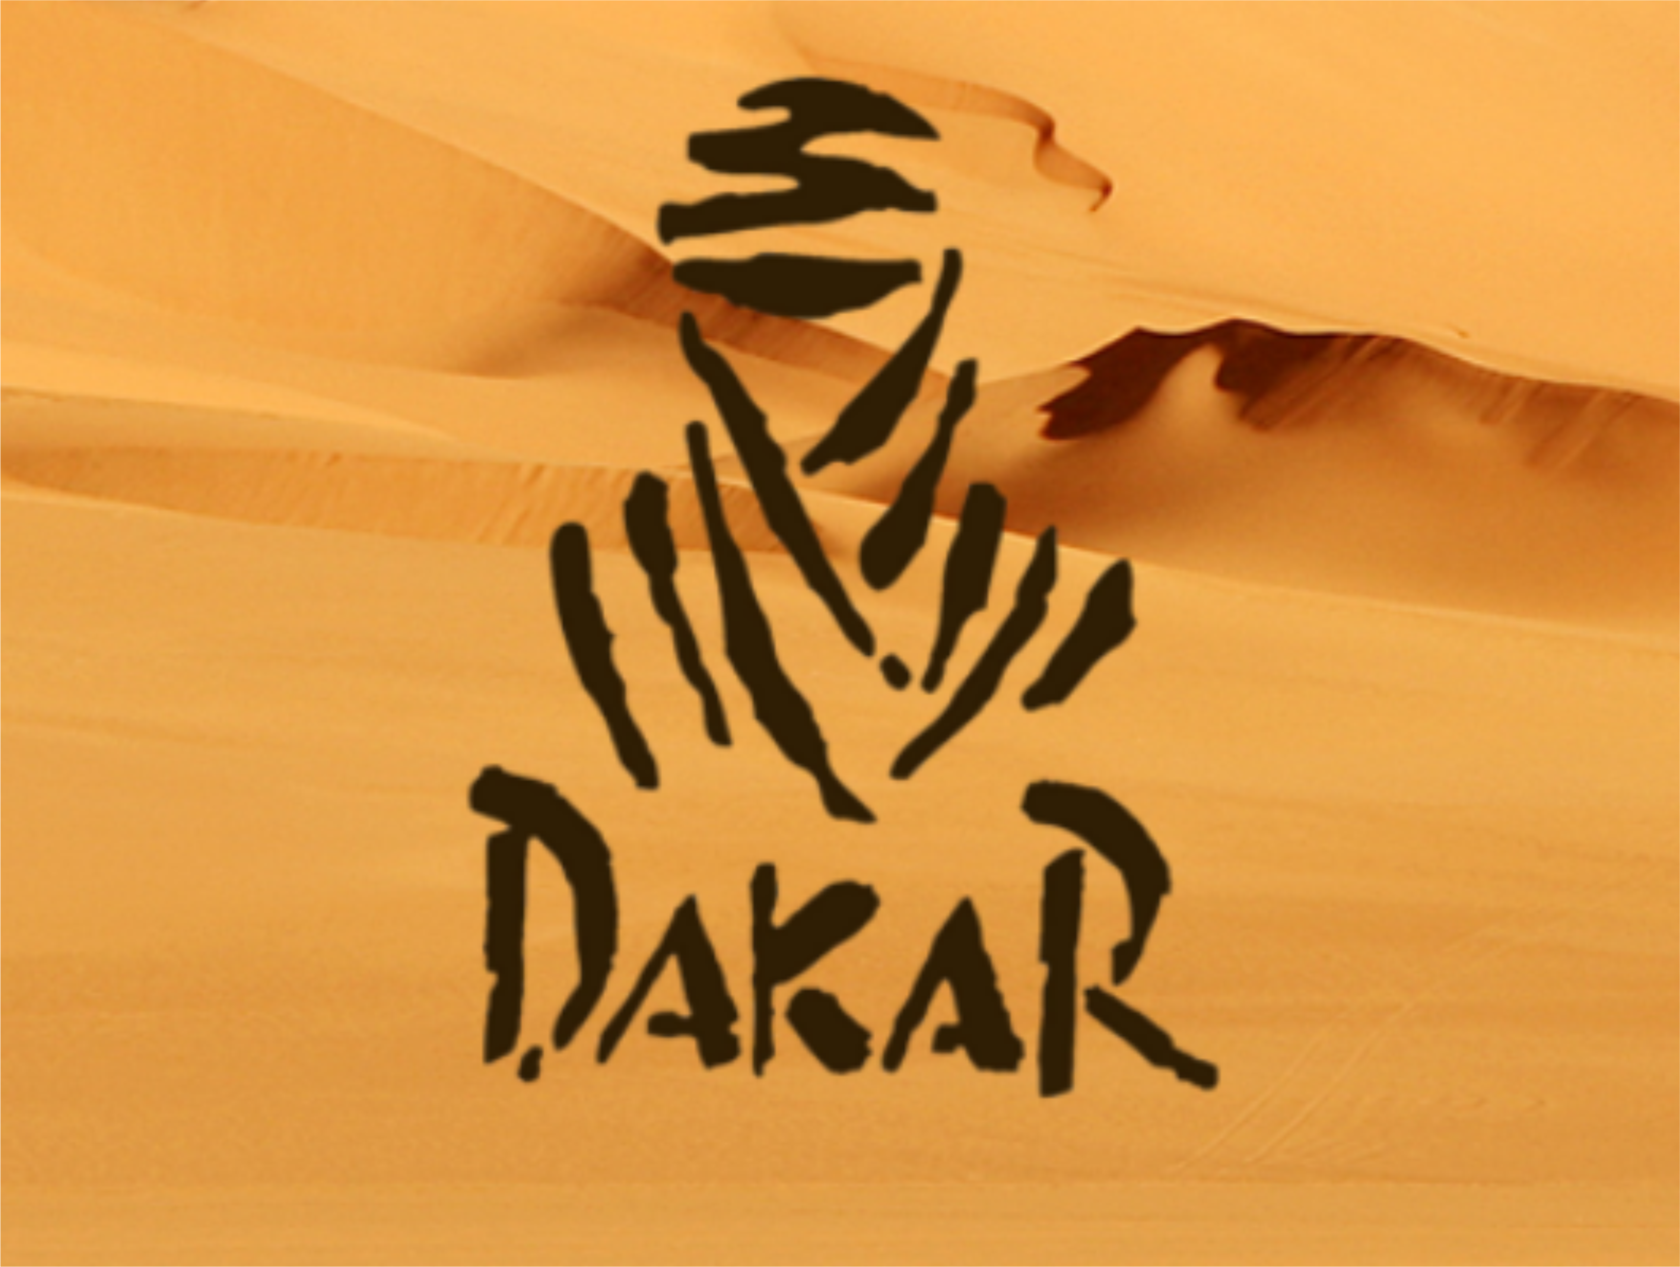 Африканский народ логотип дакар